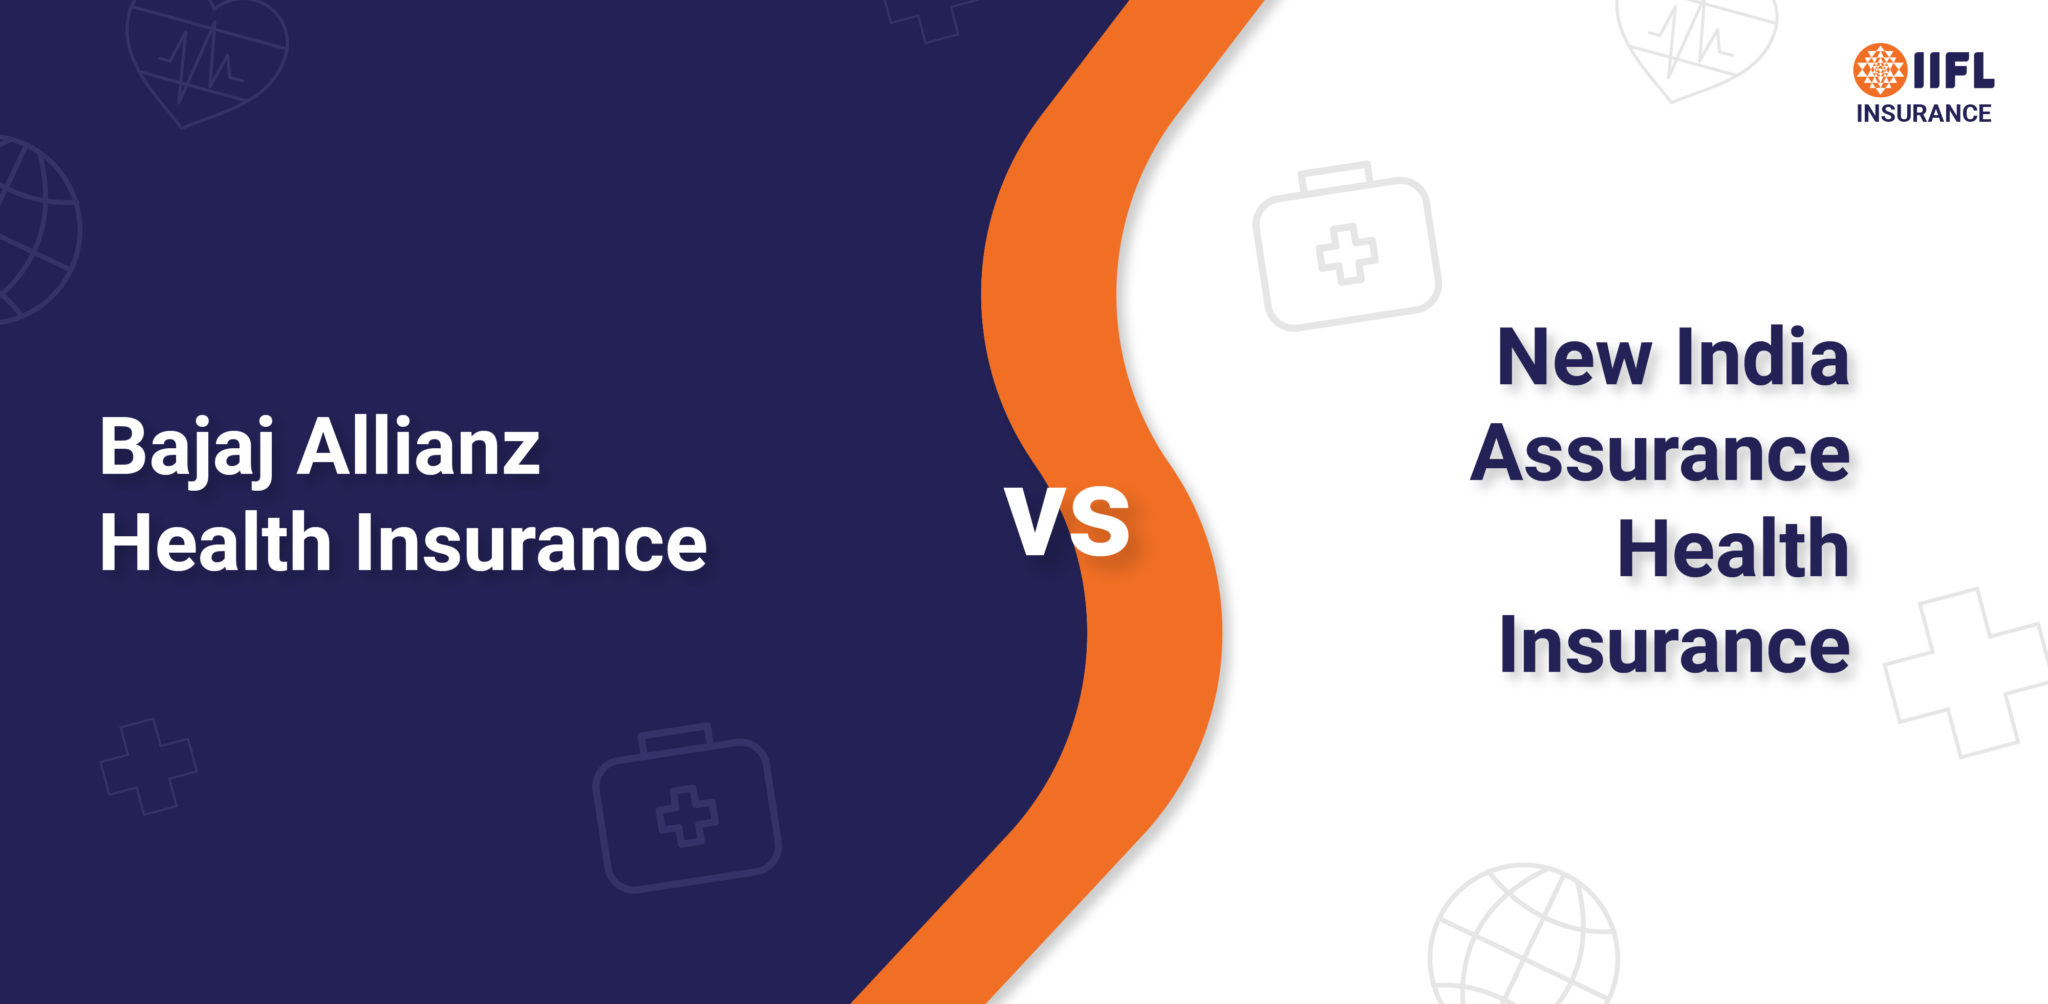 Bajaj Allianz Health Insurance vs New India Assurance Health Insurance